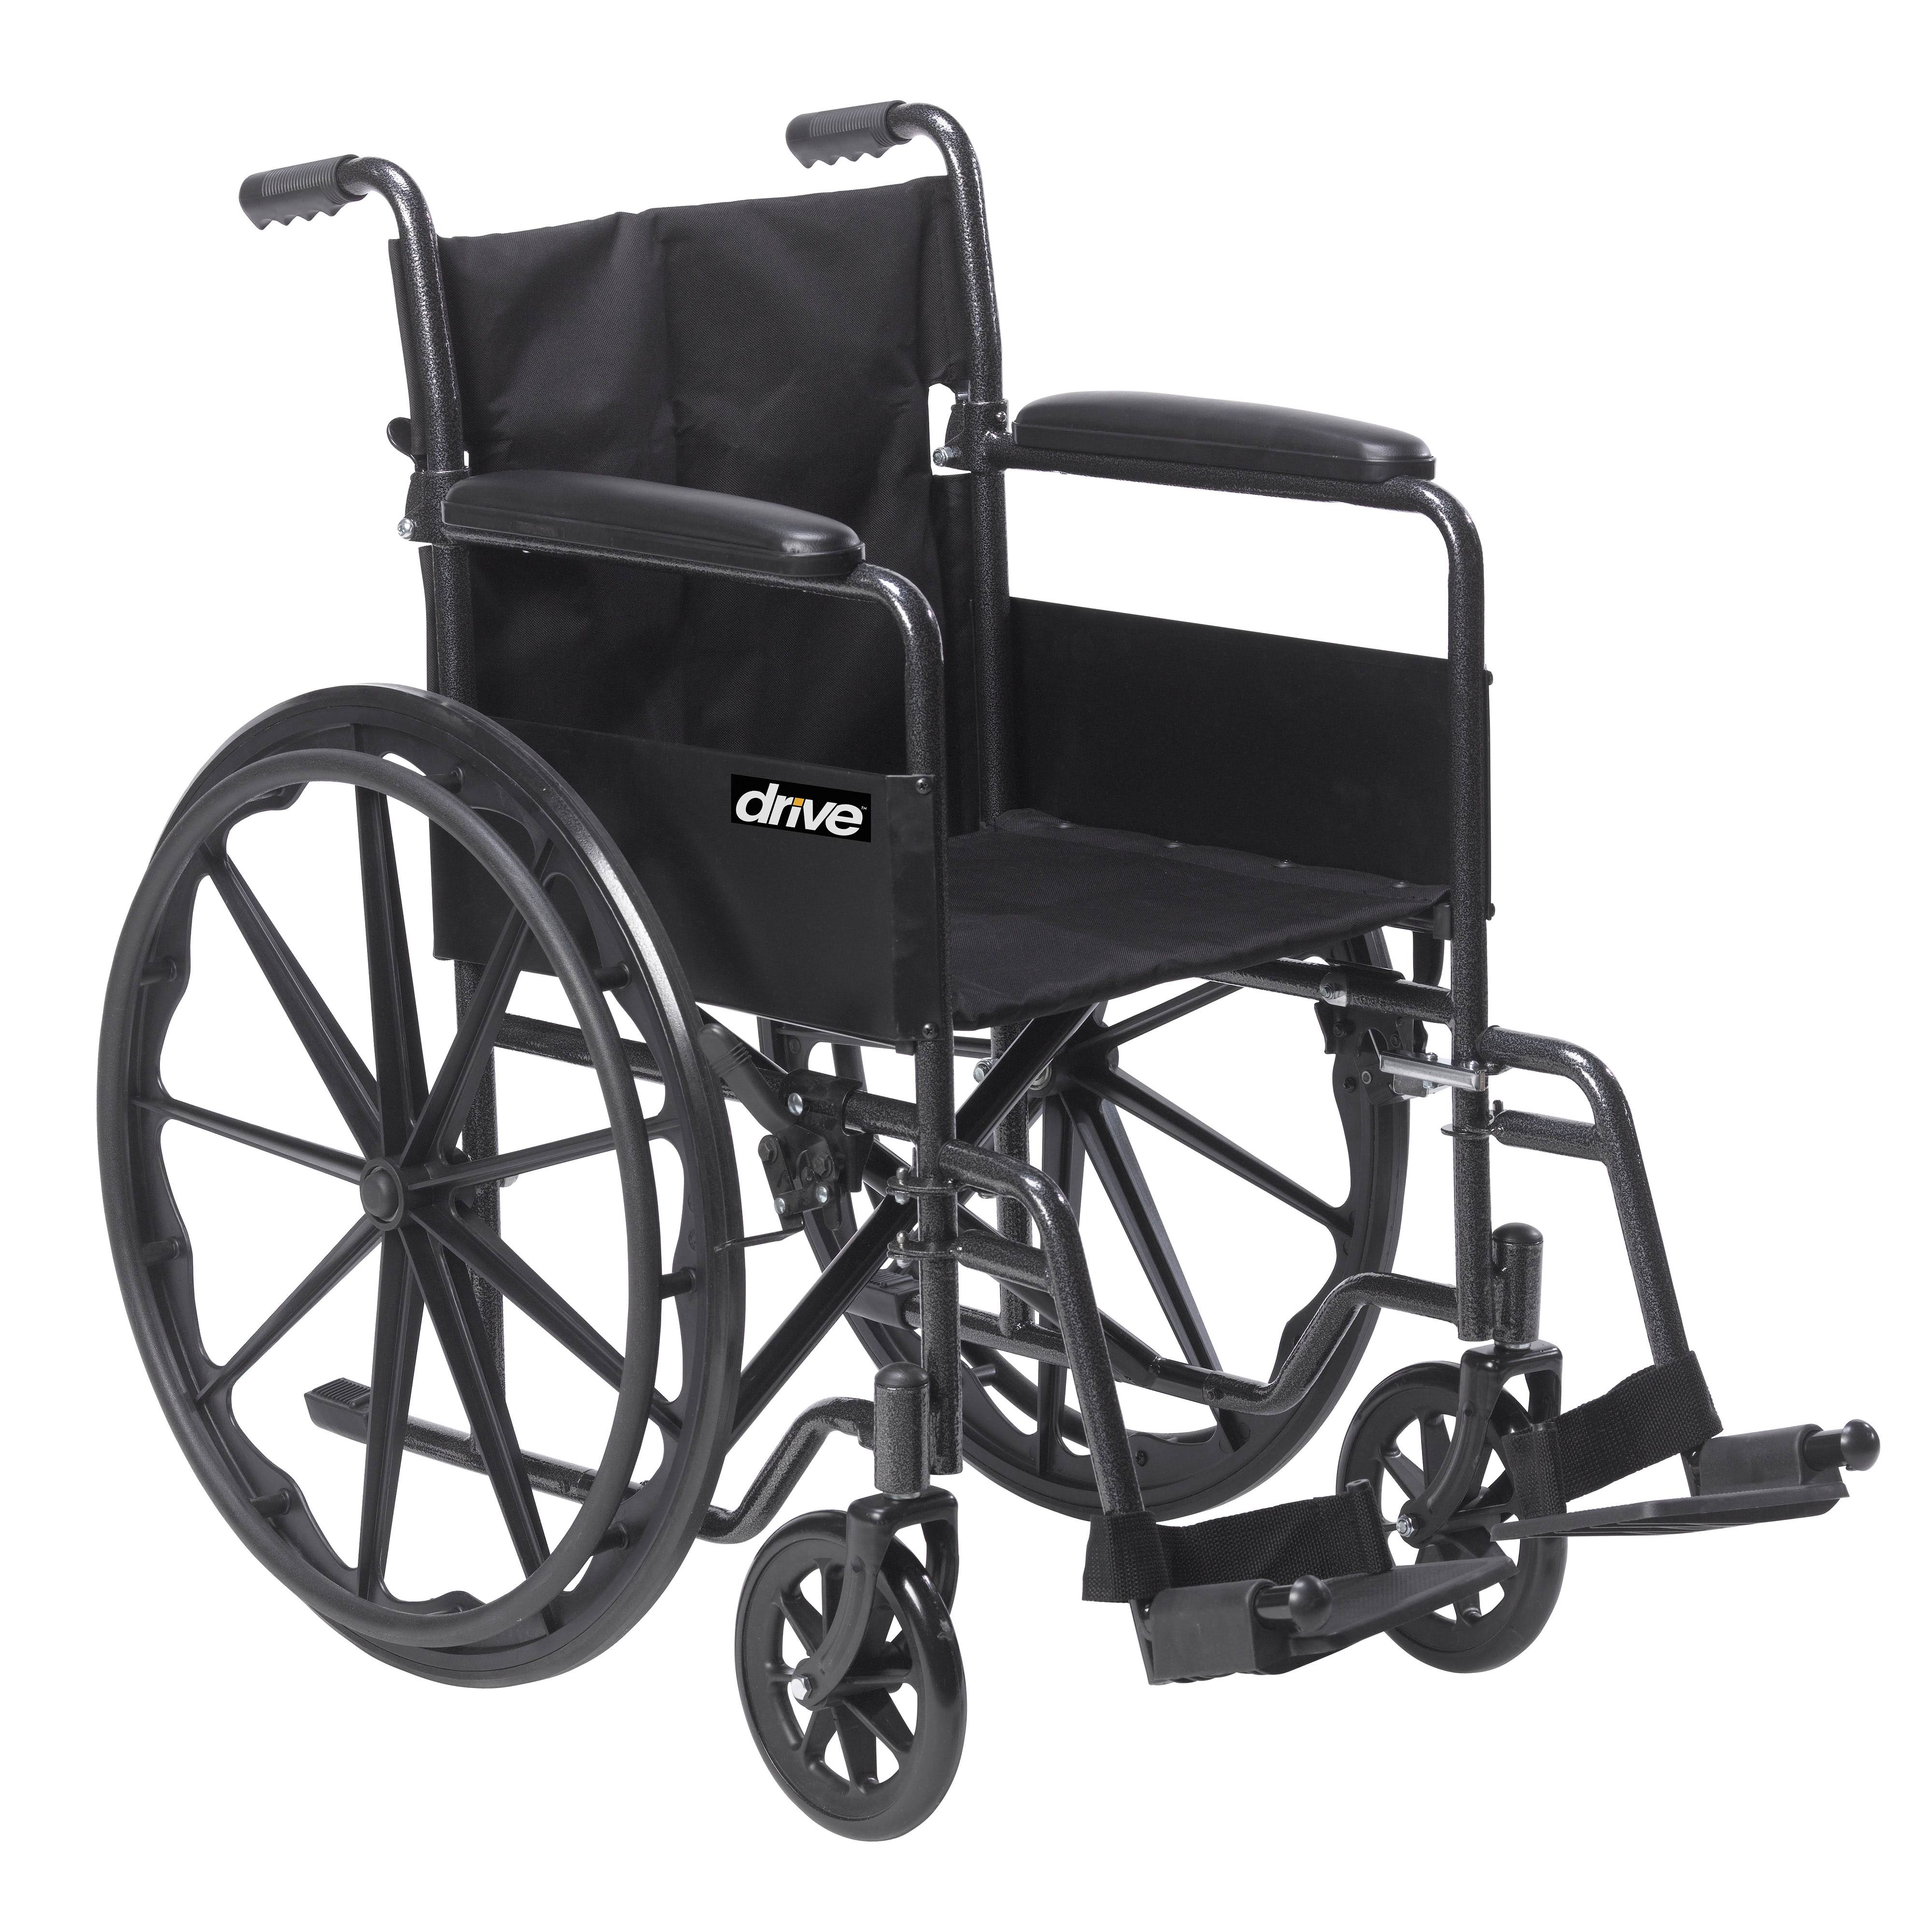 Drive Medical Инвалидное кресло Silver Sport 1 с подлокотниками и поворотной съемной подставкой для ног